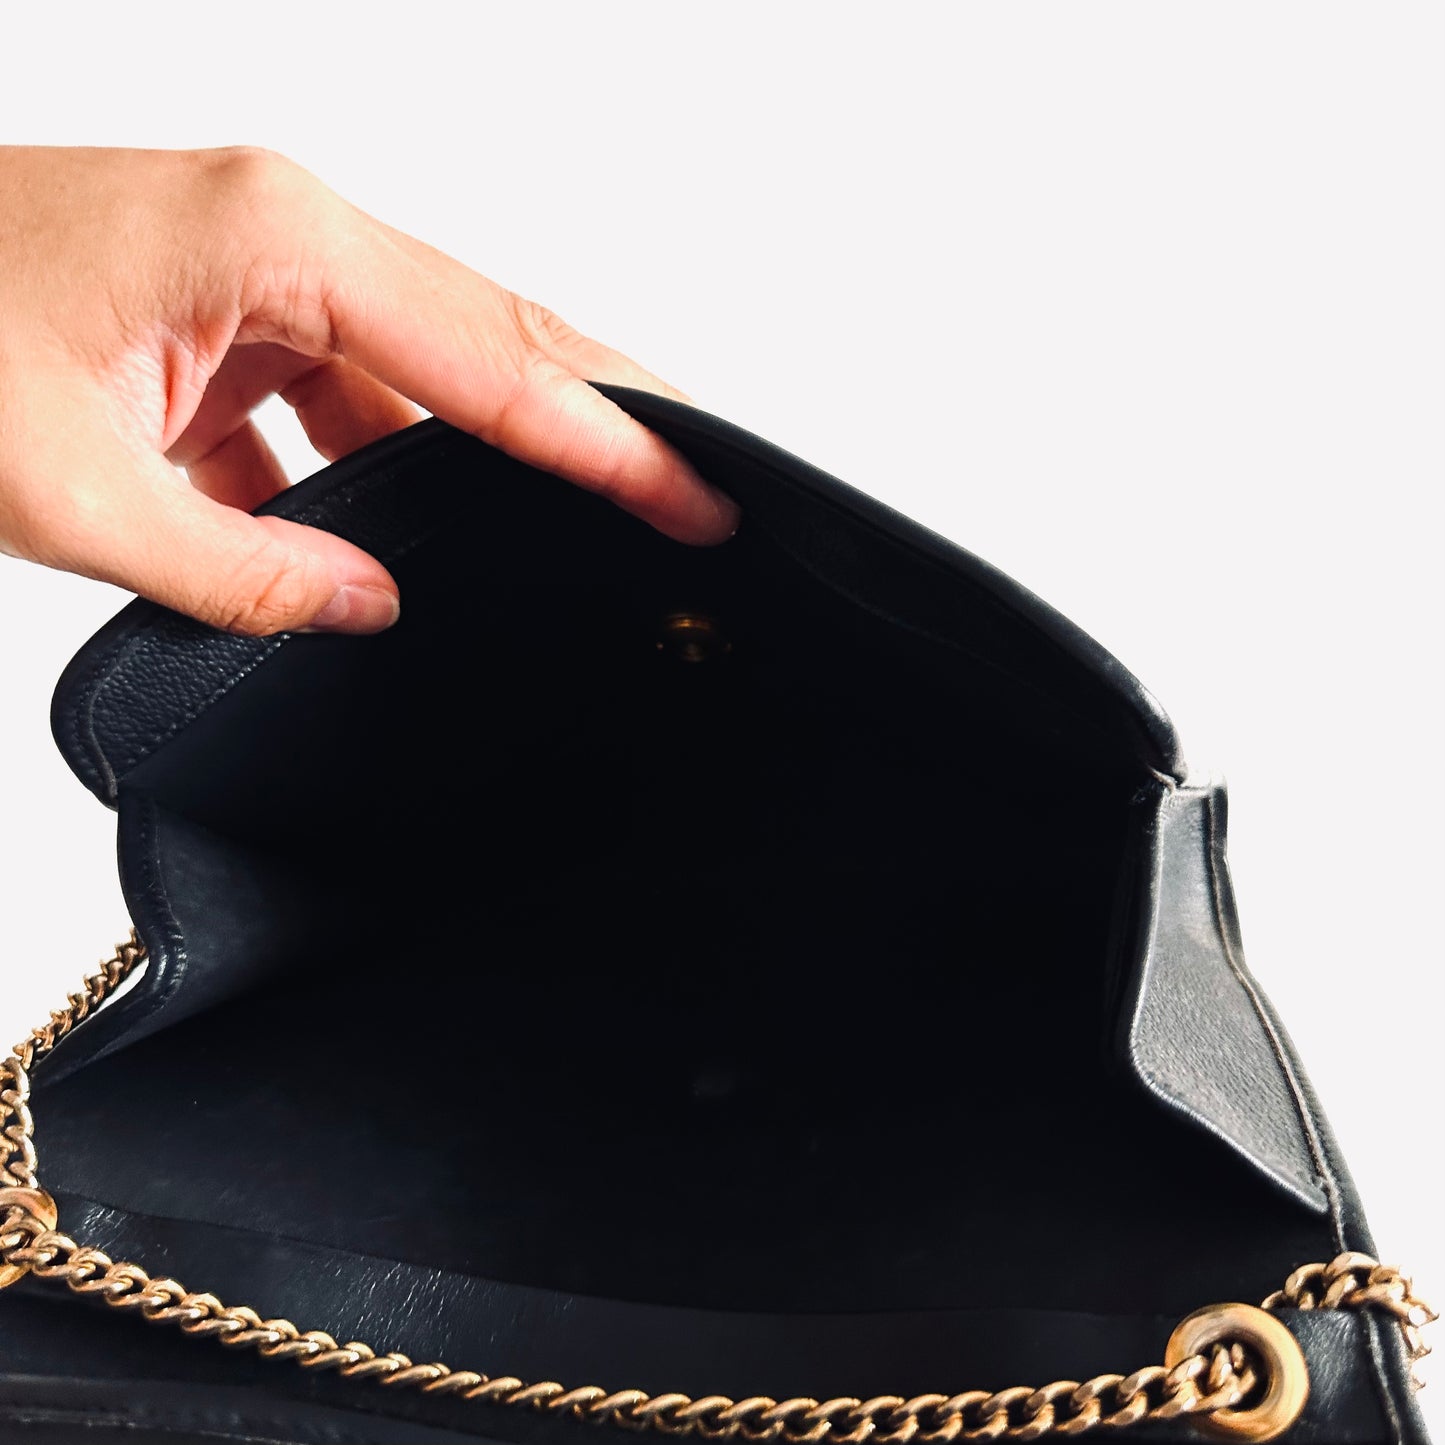 Christian Dior CD Black GHW Grained Leather Monogram Logo Vintage 2-Way Flap Shoulder Sling Bag